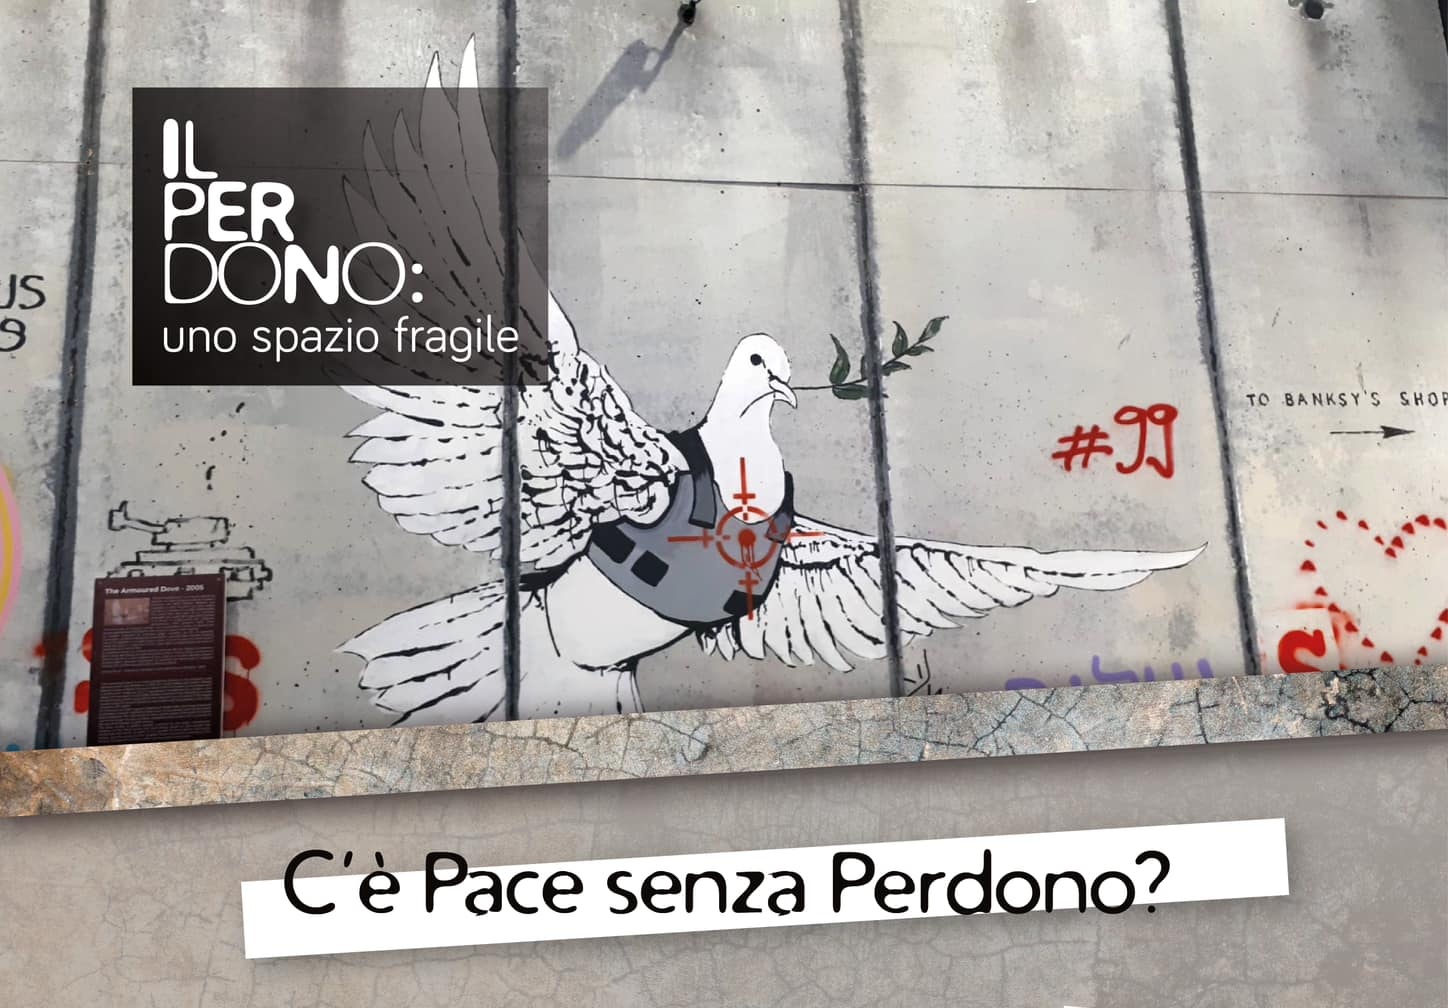 Arcidiocesi di Siracusa: “C’è Pace senza Perdono?” – domani incontro all’Auditorium dell’Istituto “Luigi Einaudi”